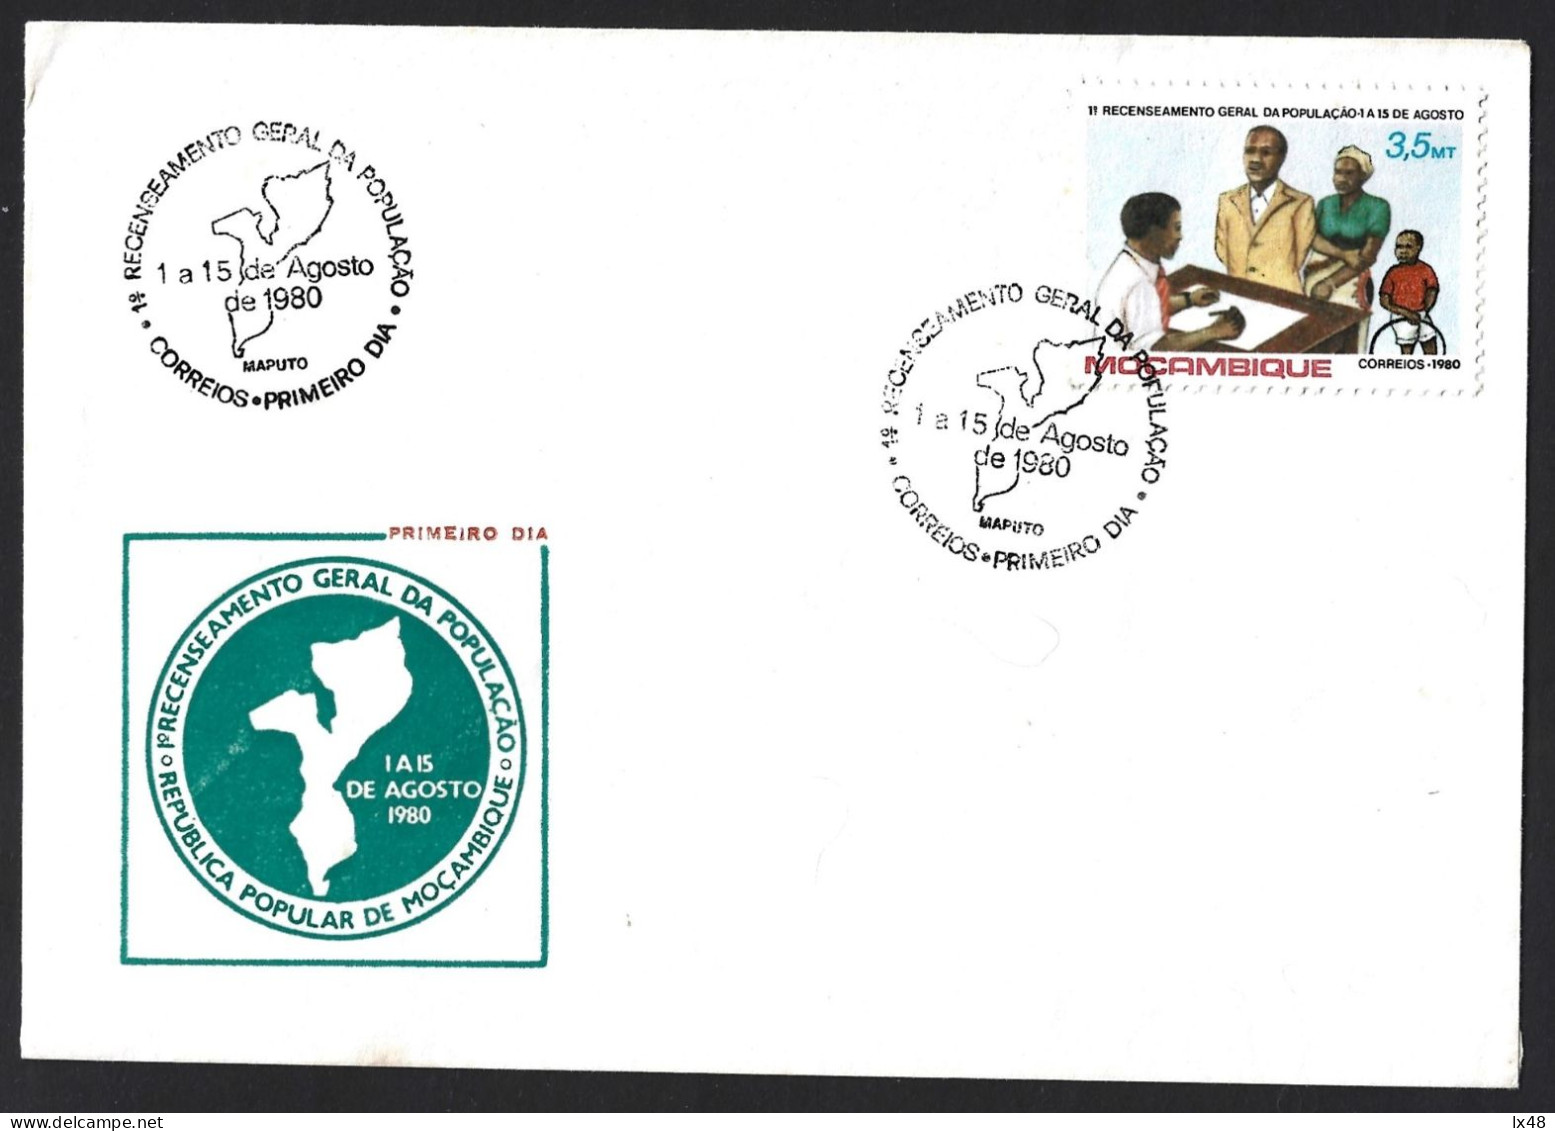 Selo 1º Recenceamento Eleitoral Moçambique 1980. Mapa Estilizado. Família. Stamp 1st Electoral Registration Moçambique - Mozambico